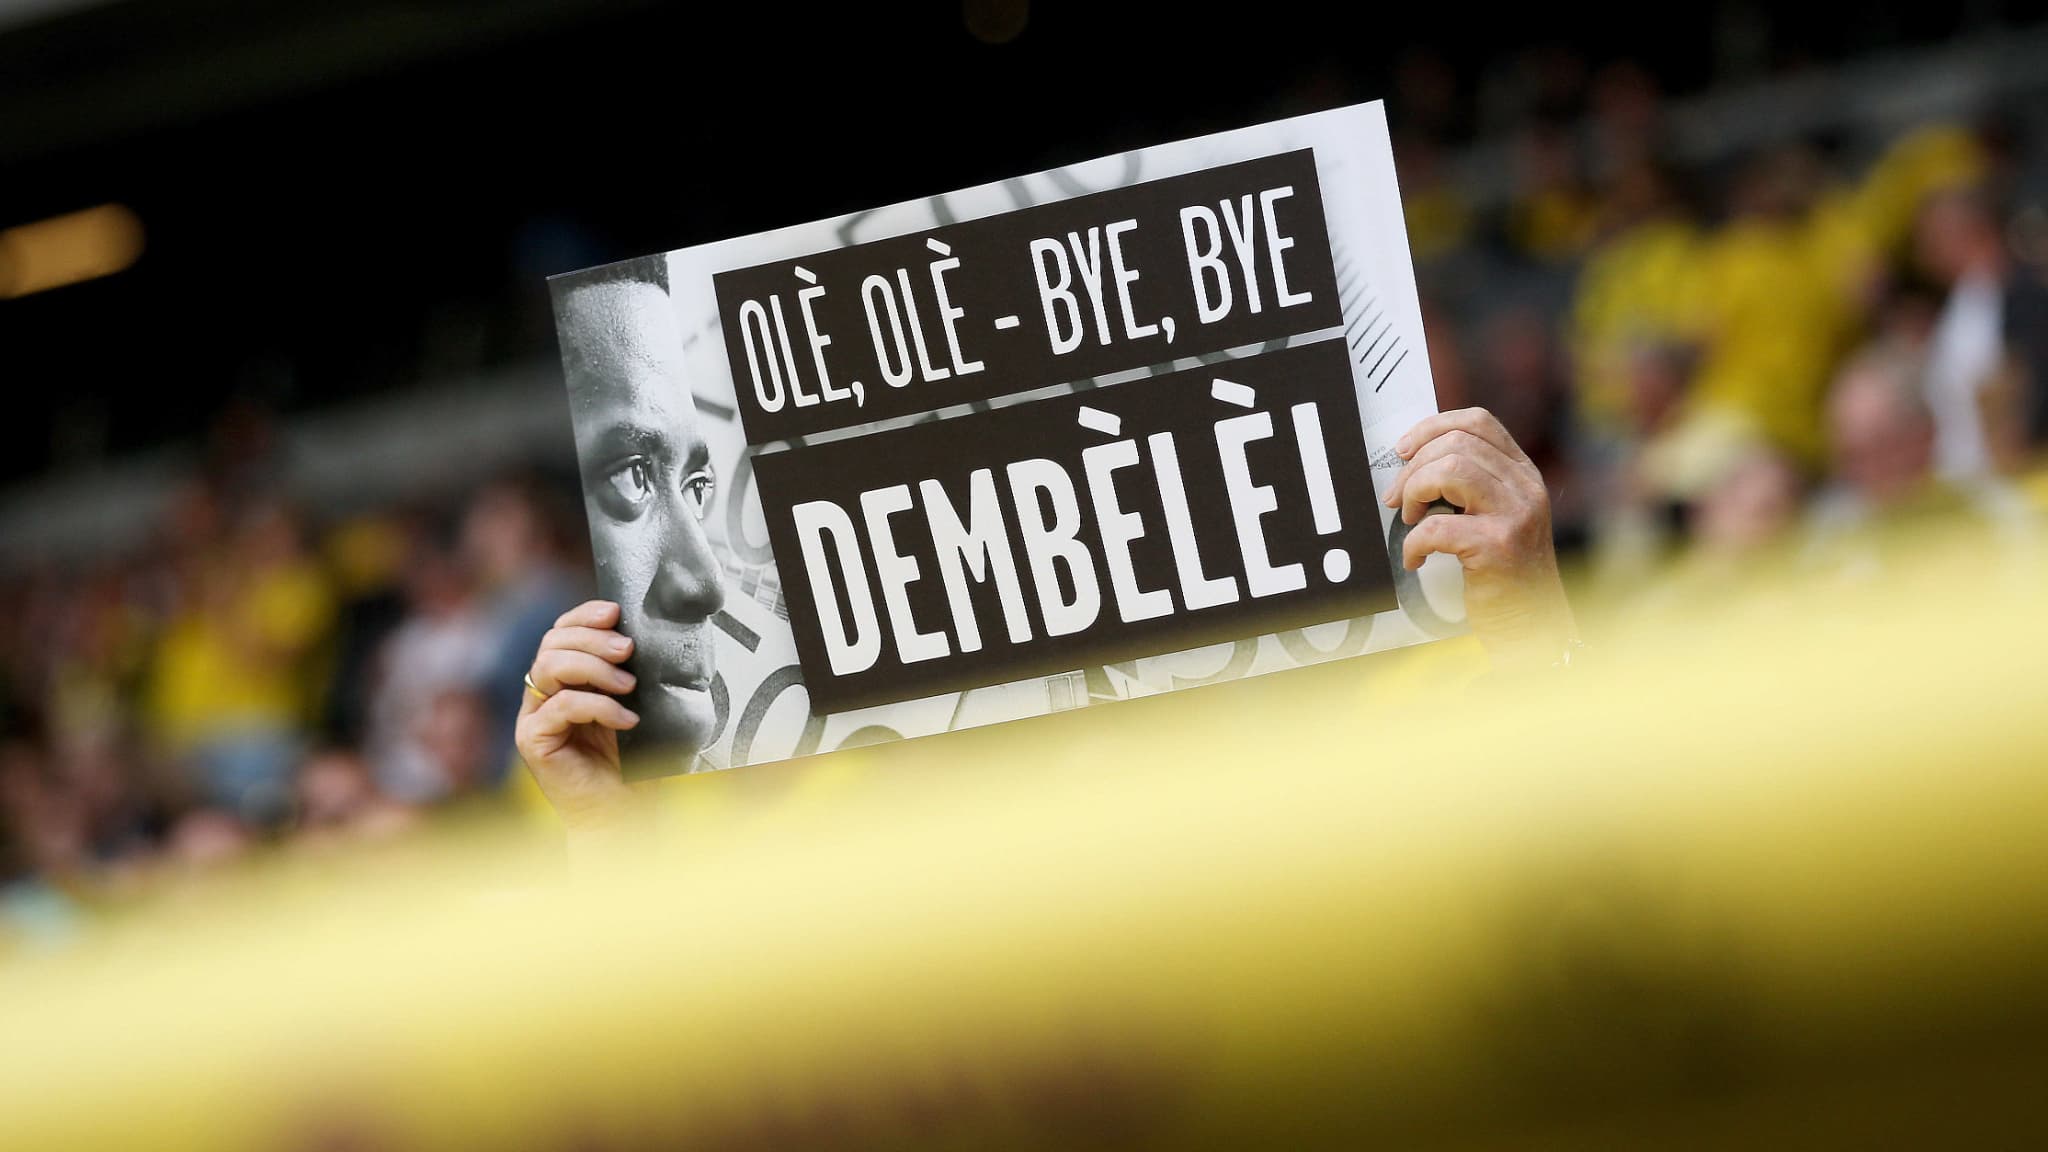 Dembélé, a departure that (again) infuriates Borussia supporters